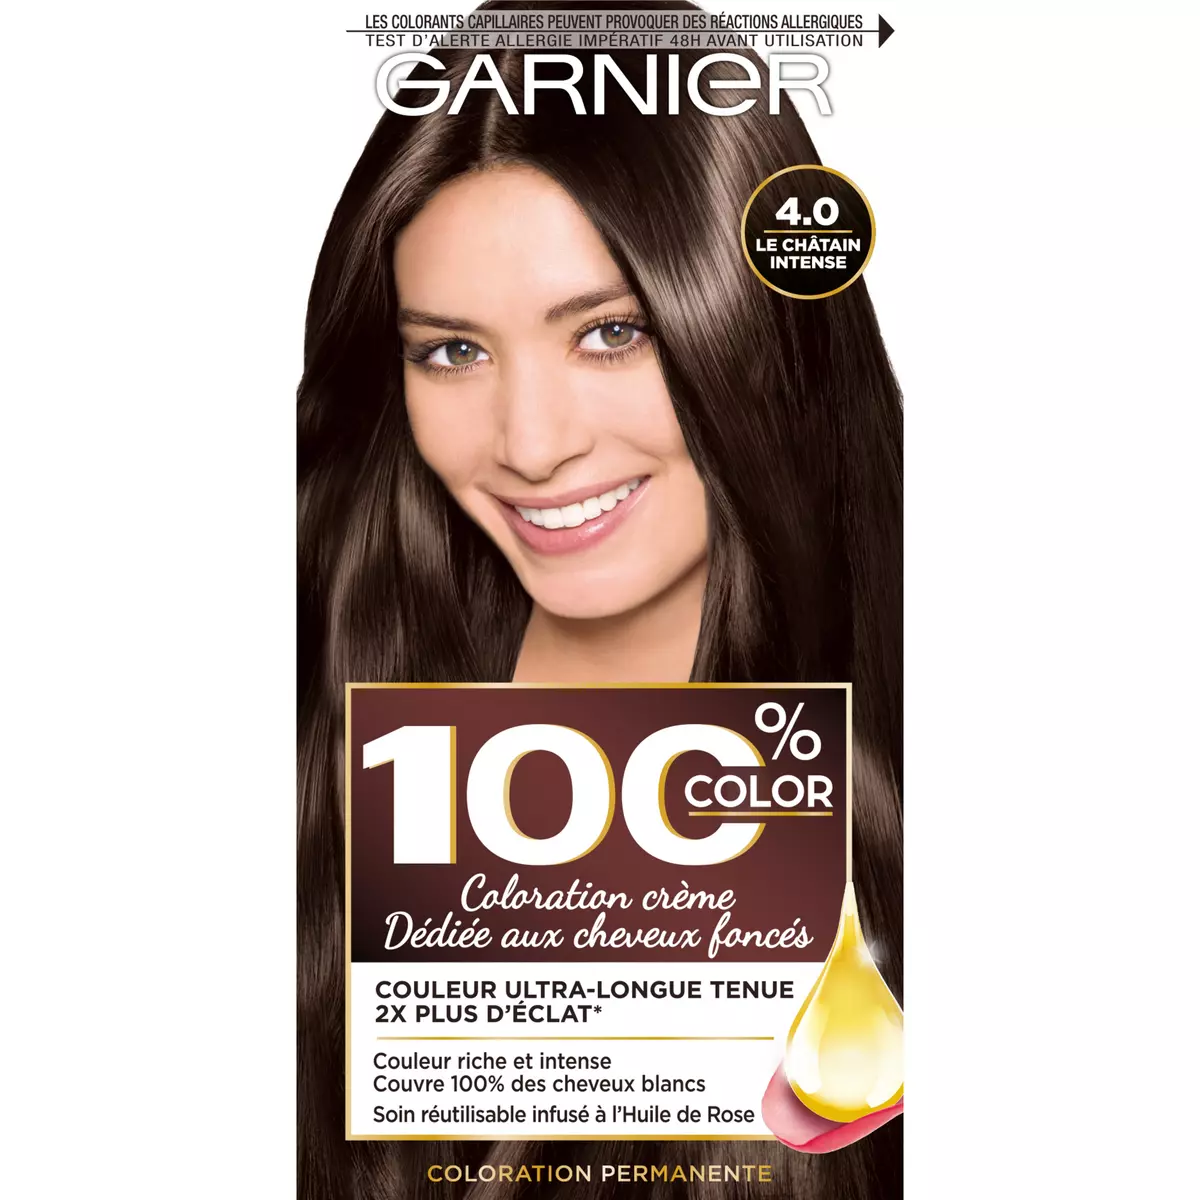 GARNIER 100% Color crème coloration pour cheveux foncés 4.0 châtain intense 1 kit